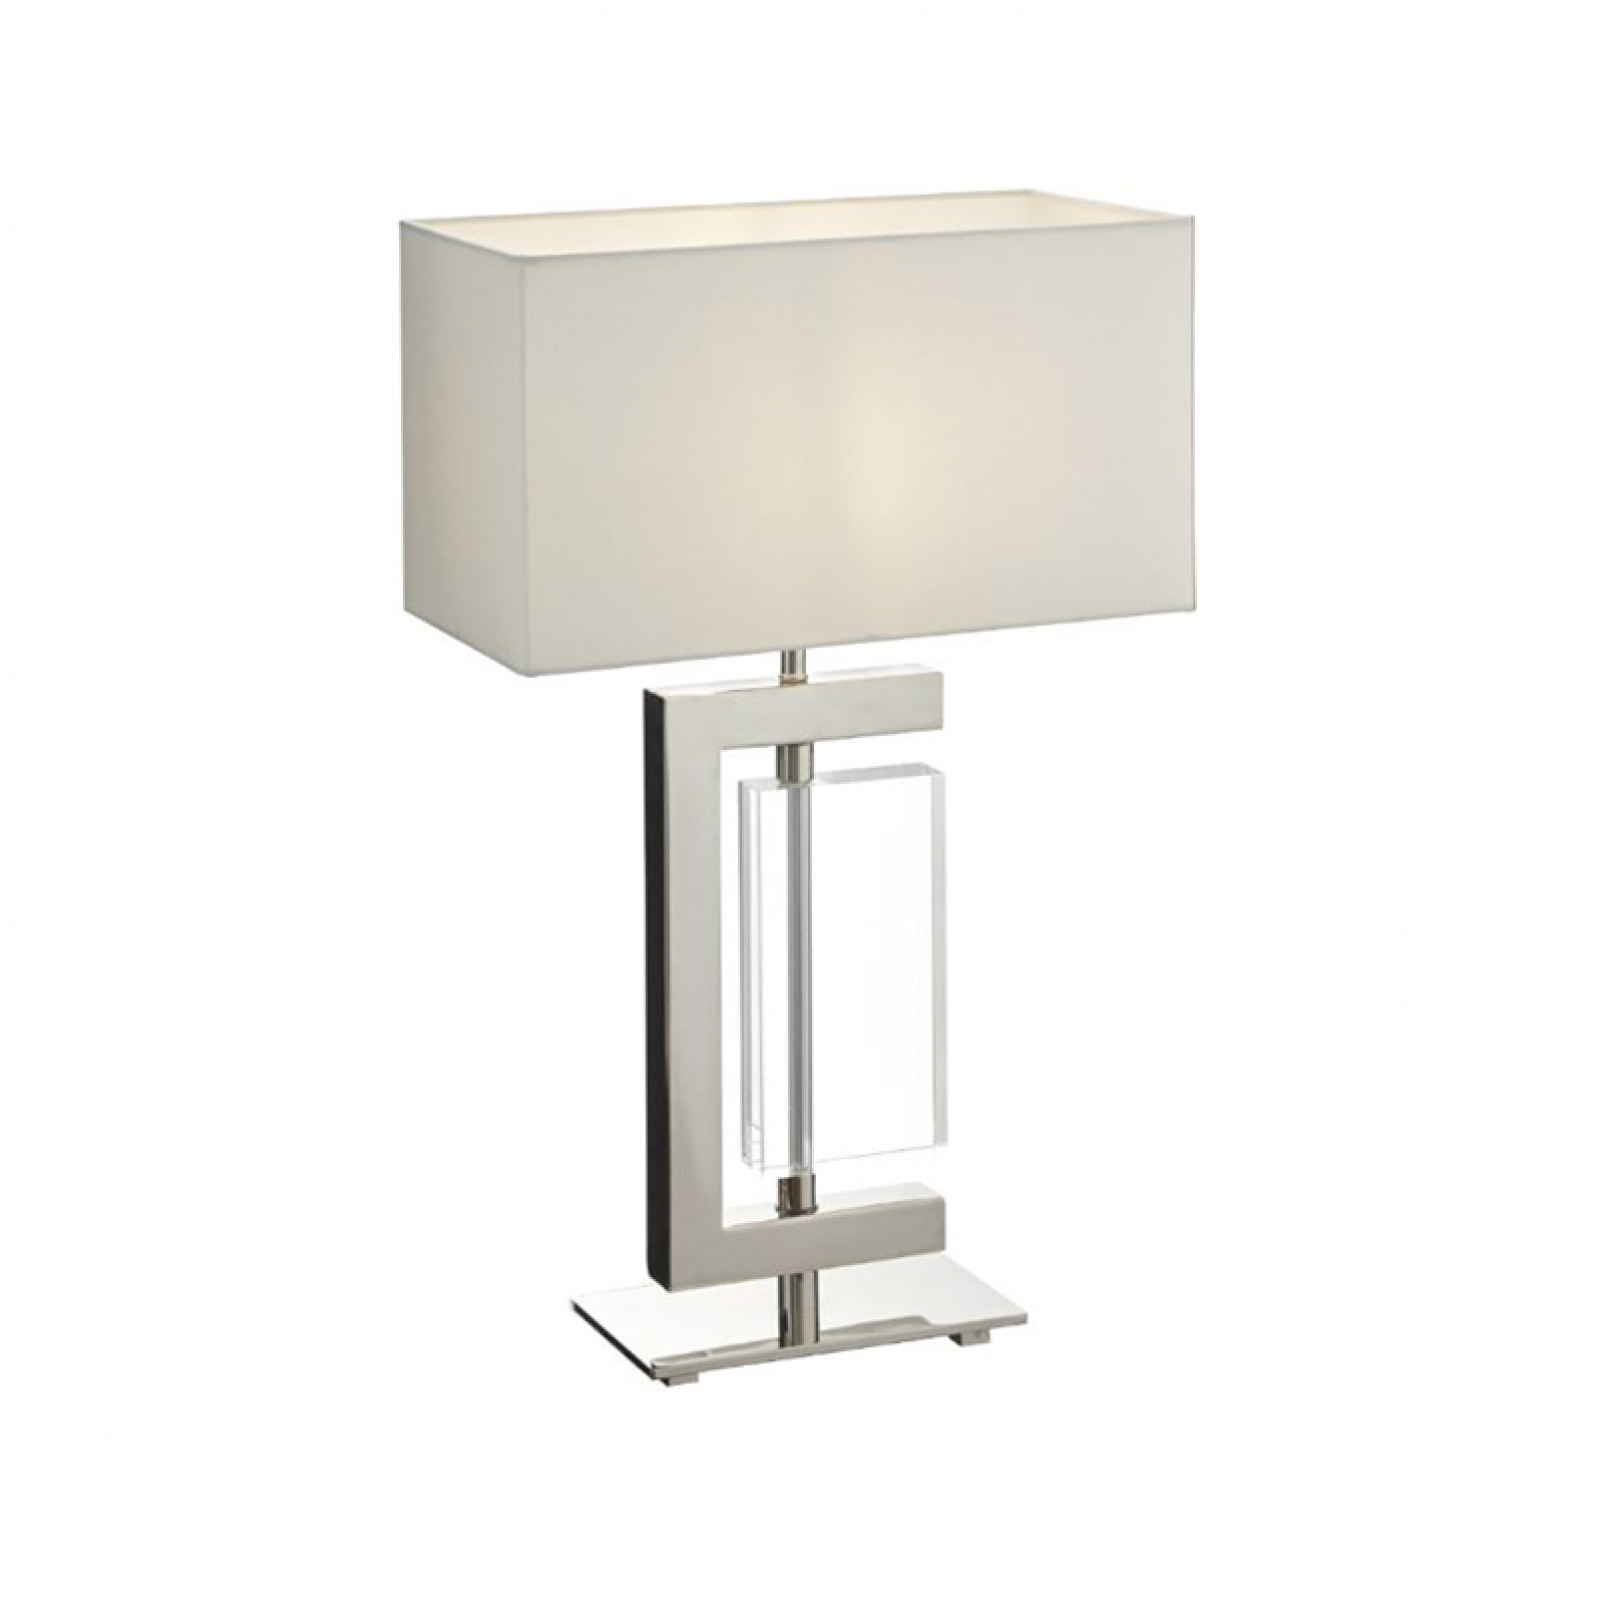 Julieta table lamp